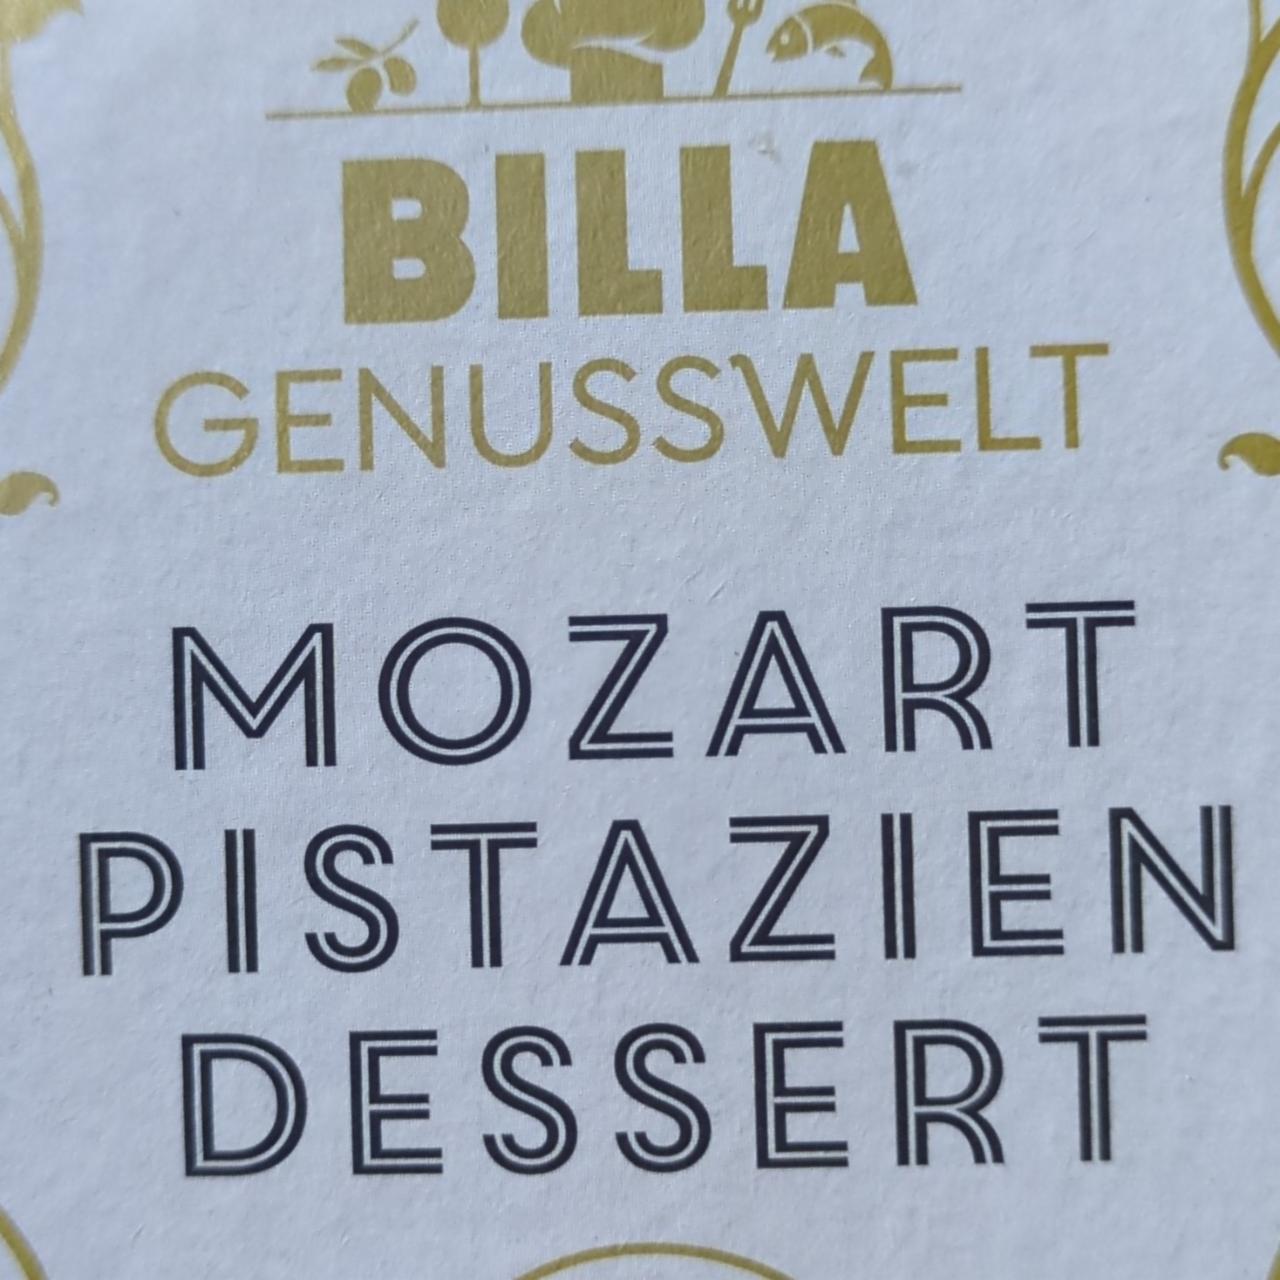 Fotografie - Mozart Pistazien Dessert Billa Genusswelt